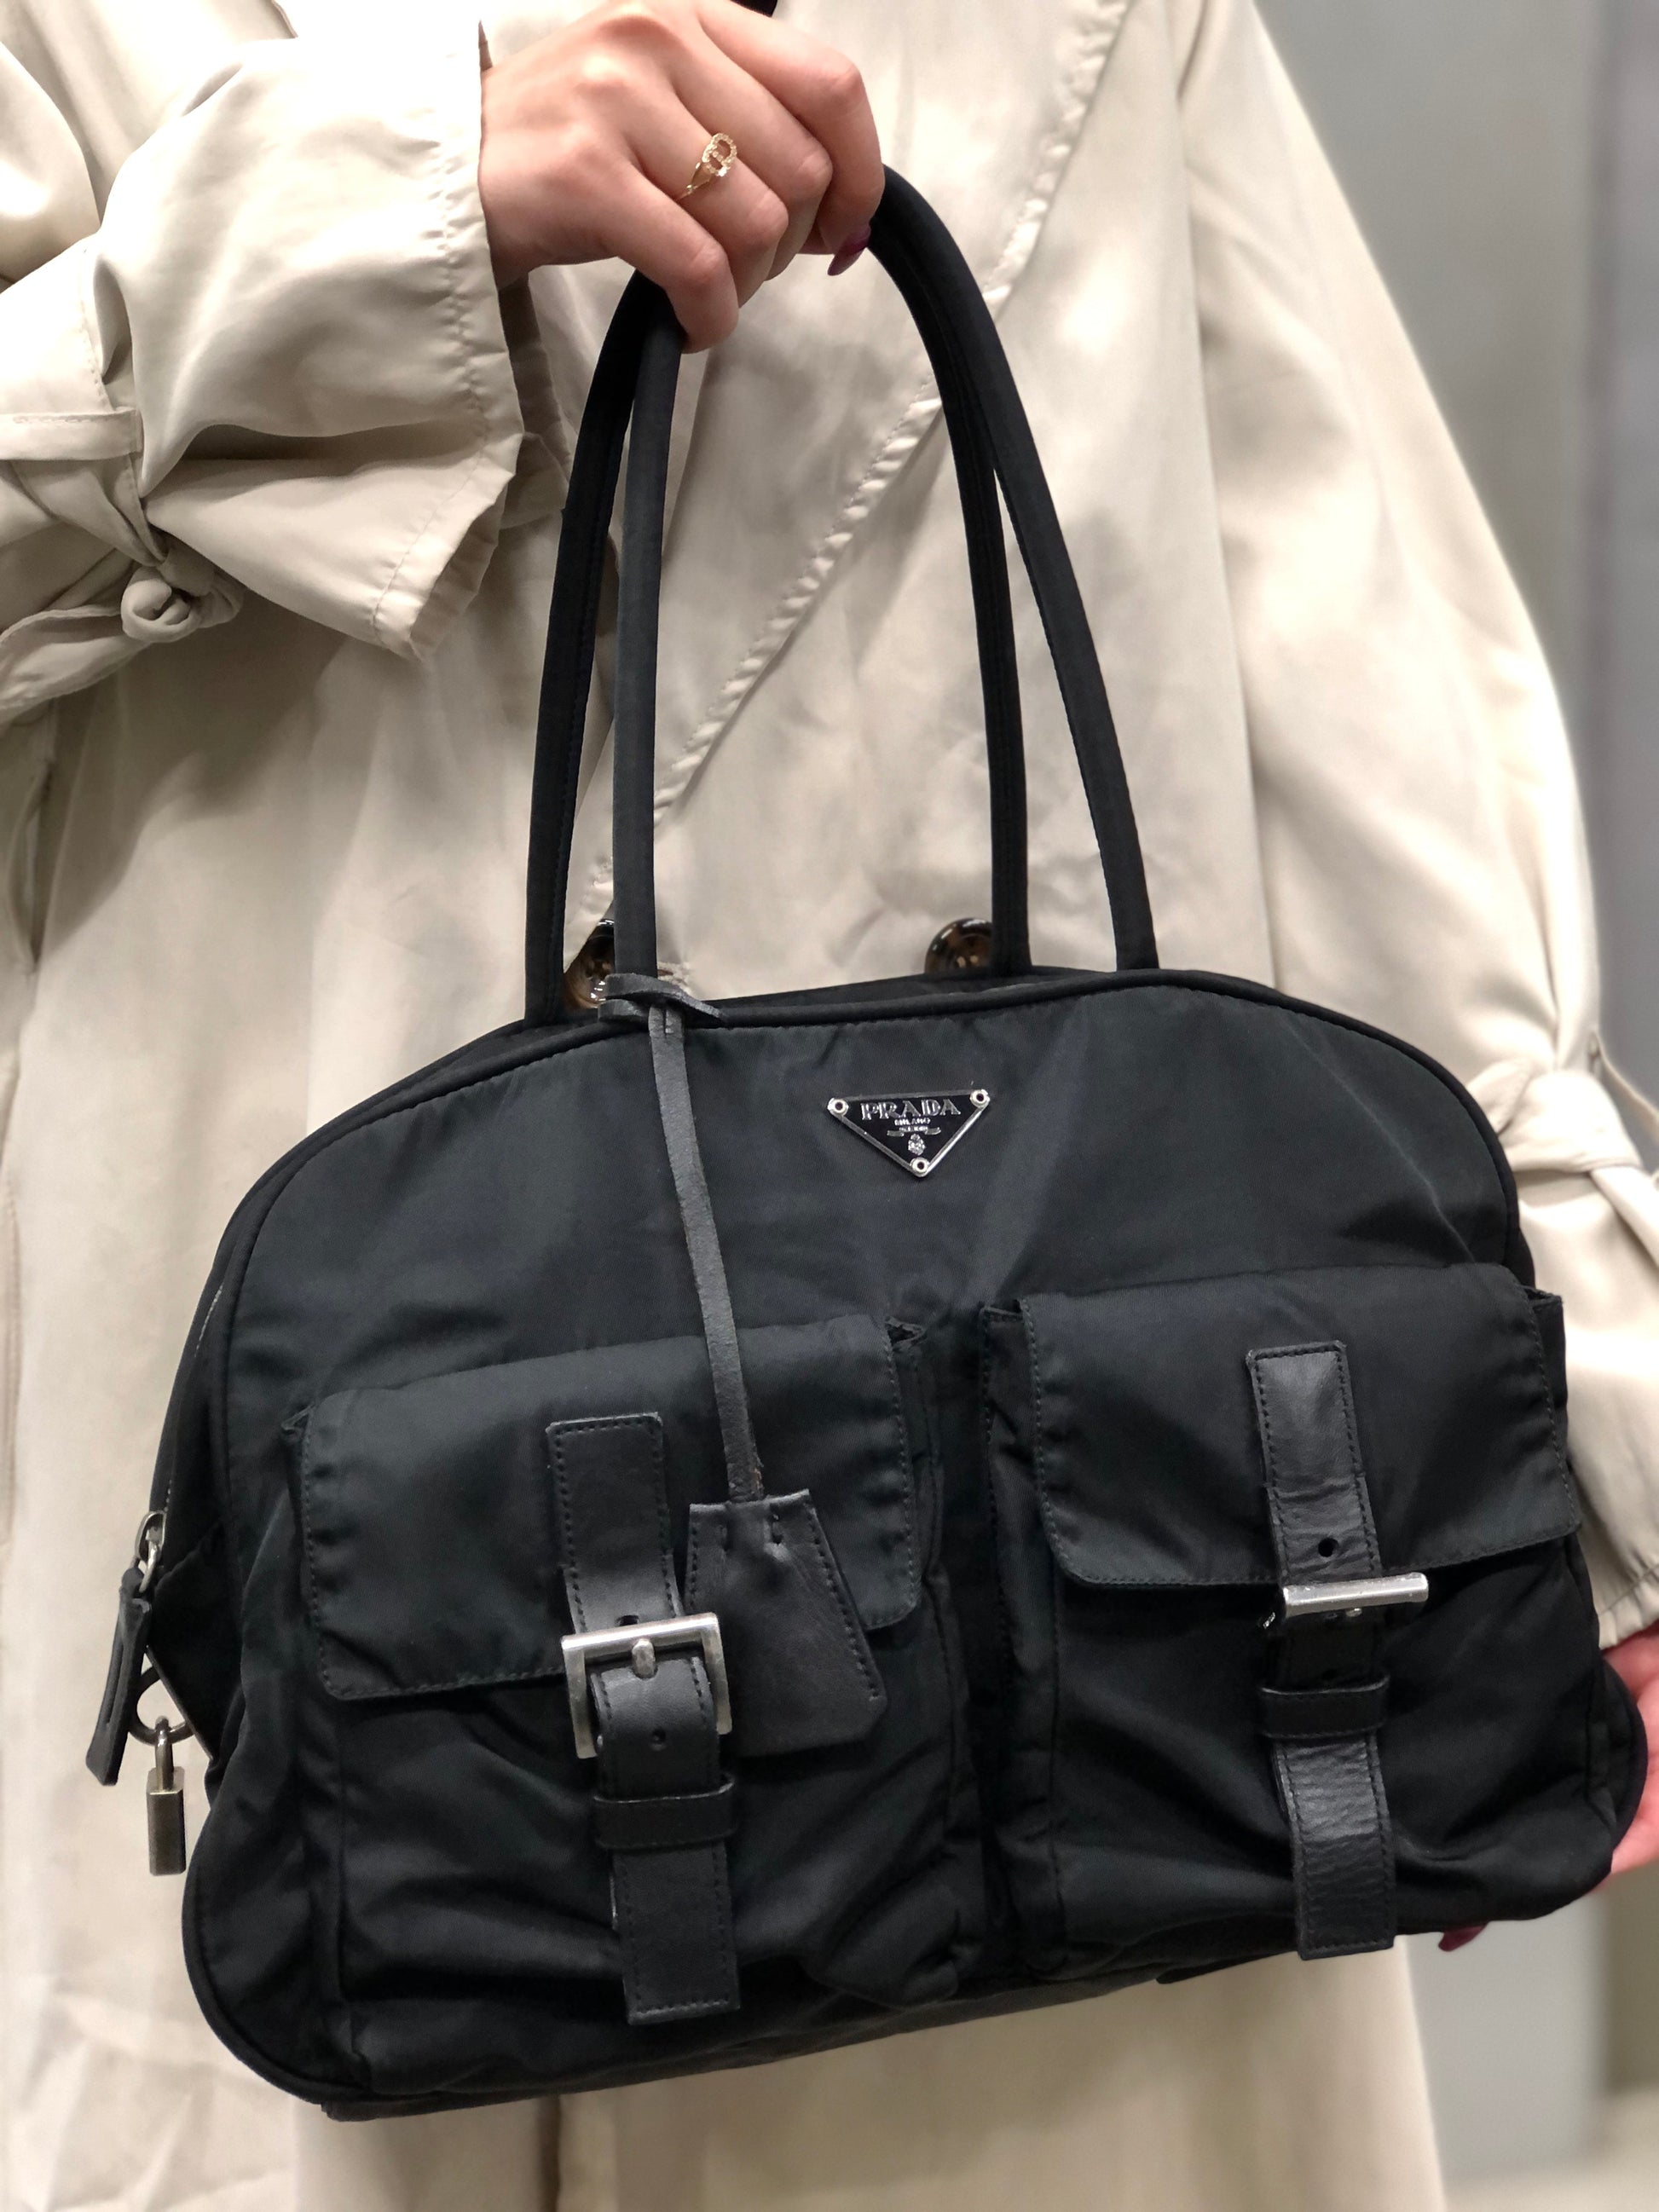 Prada Black Leather and Nylon Boston Bag